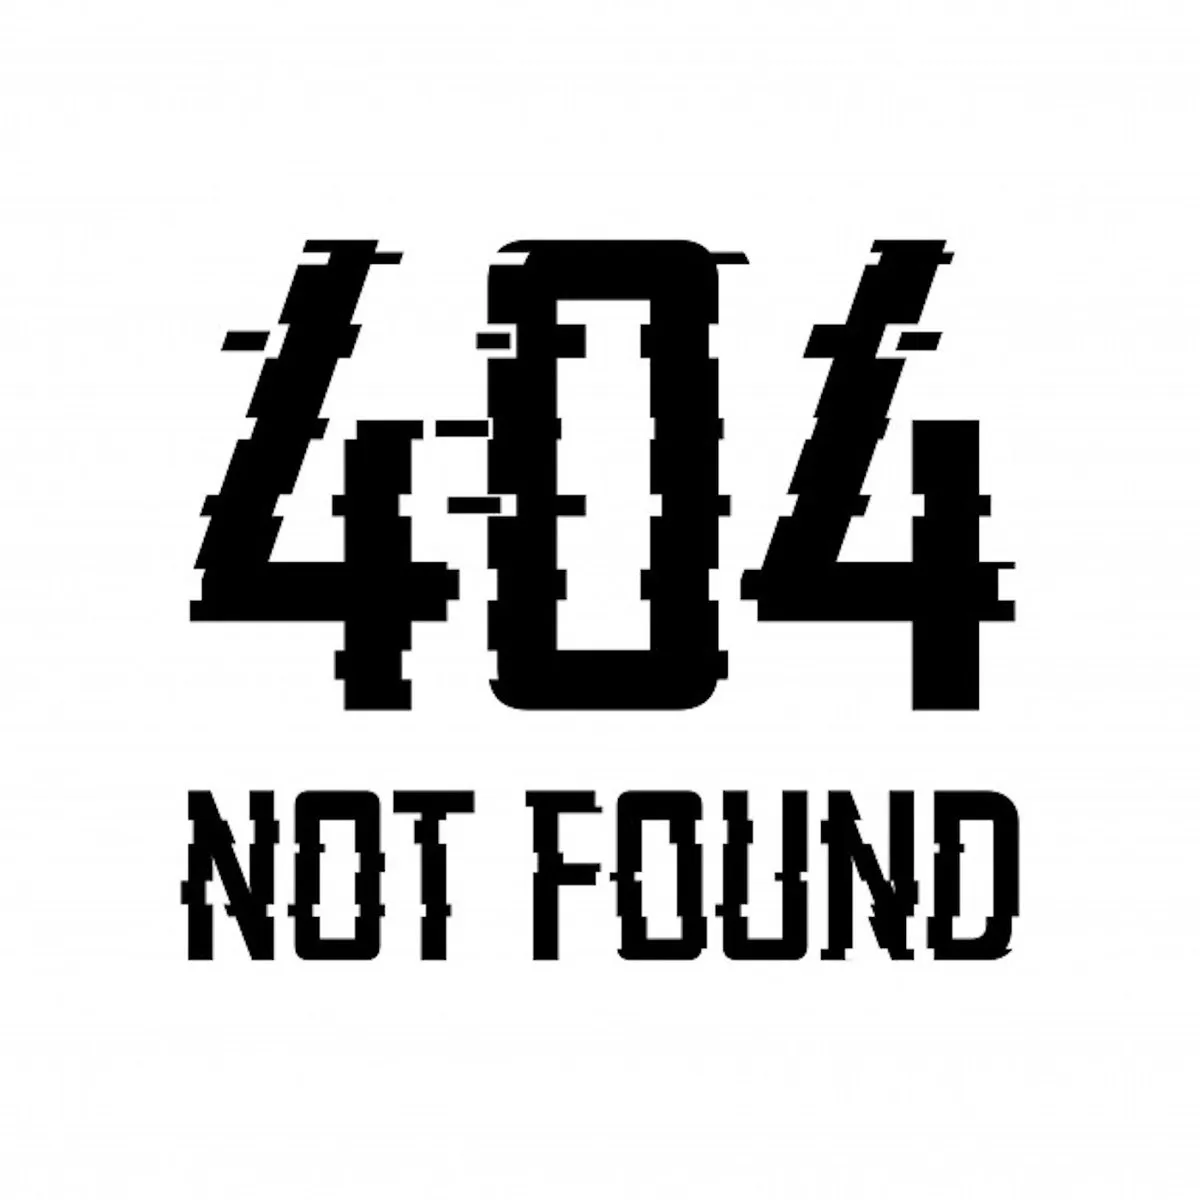 https://www.texno.blog/‘404 Not Found’ nədir?